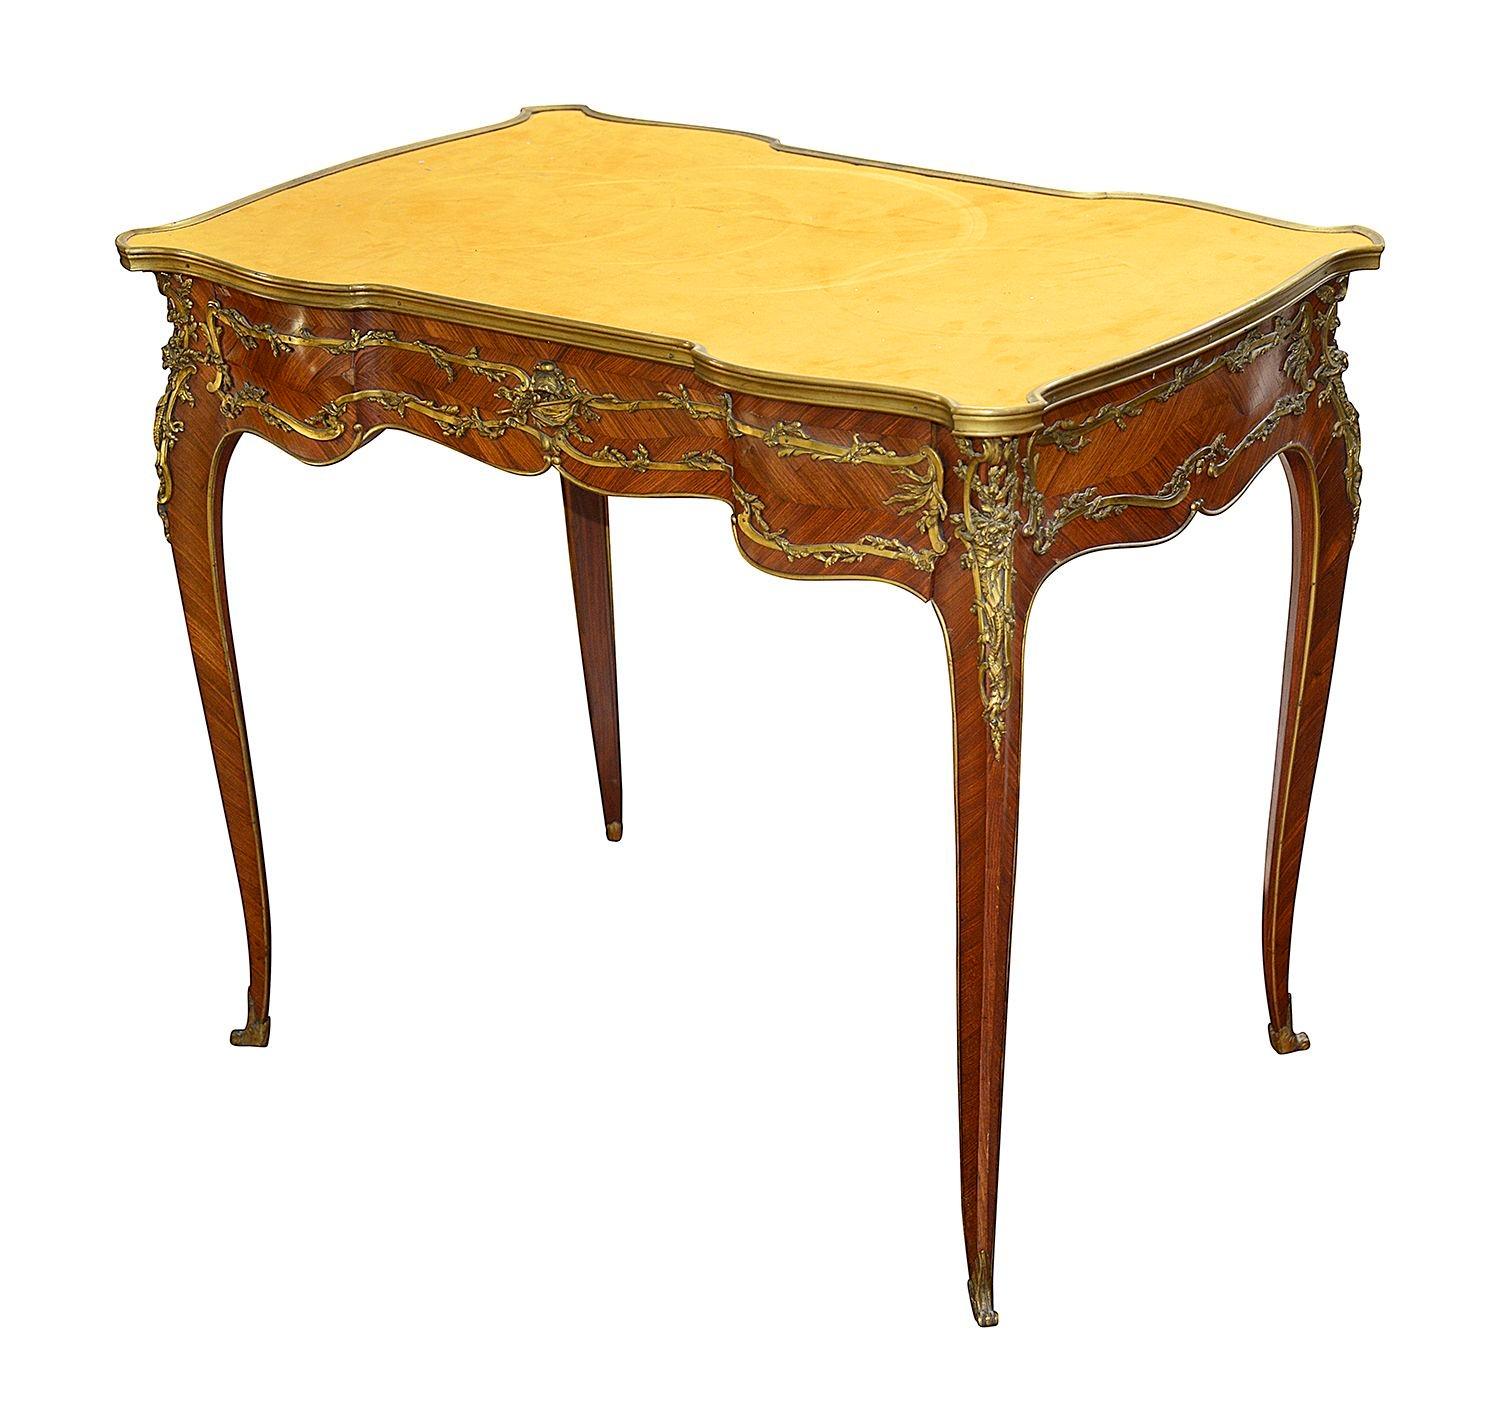 Un élégant bureau plat en bois de roi de style Louis XV de la fin du XIXe siècle, avec un plateau d'écriture recouvert de daim, un tiroir en frise, de merveilleuses montures en bronze doré avec un décor de feuilles entrelacées, la monture centrale